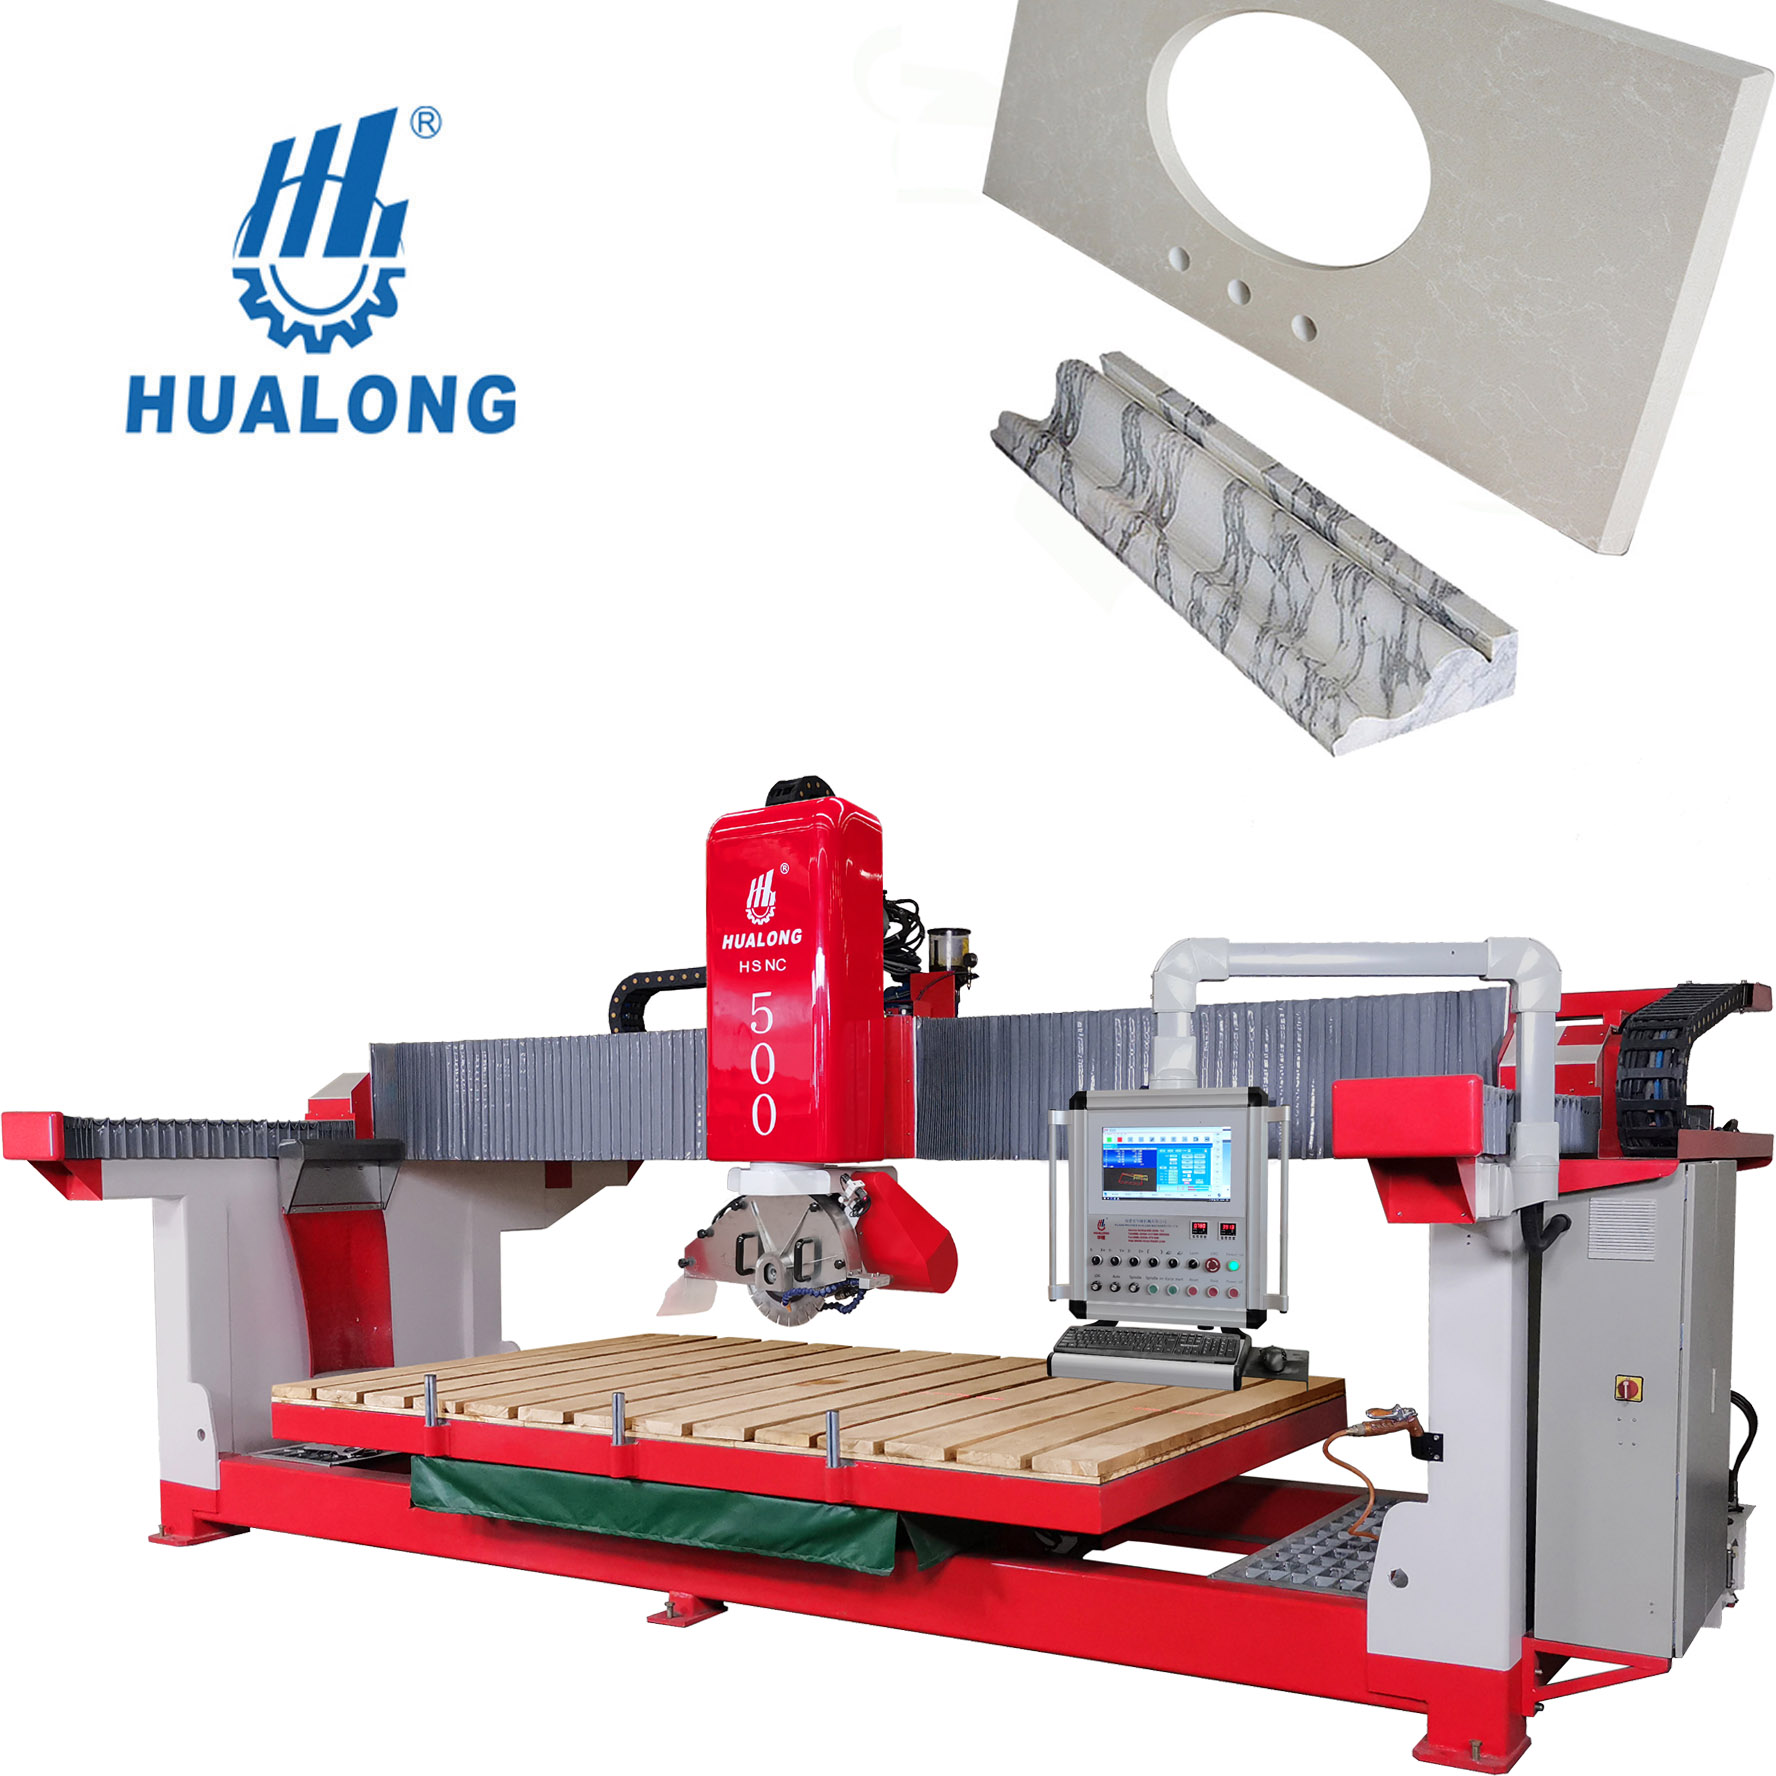 Hualong Machinery HSNC-500 Découpeuse de pierre de pont entièrement automatique avec fonction de fraisage de comptoir